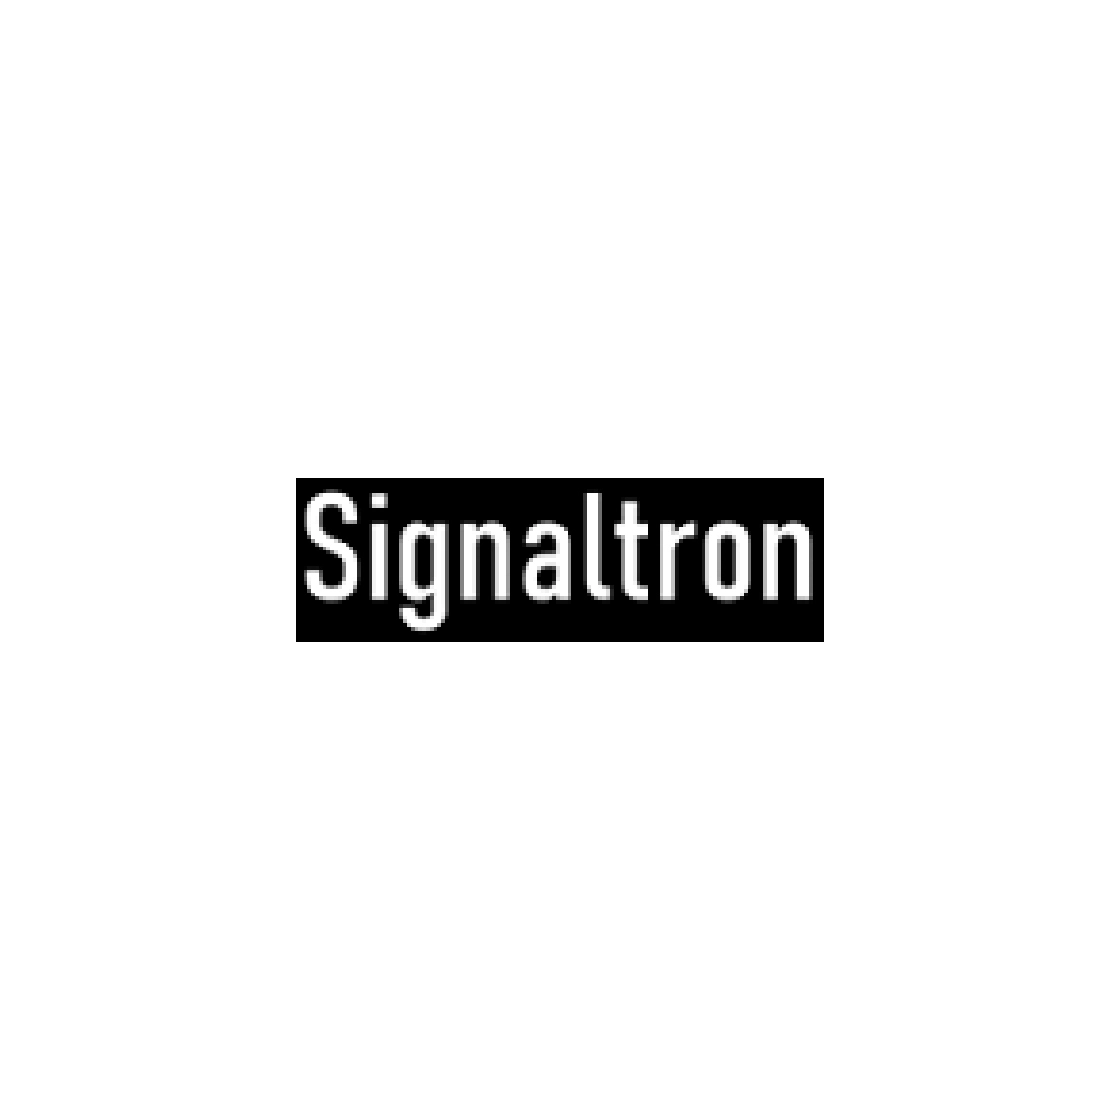 Signaltron